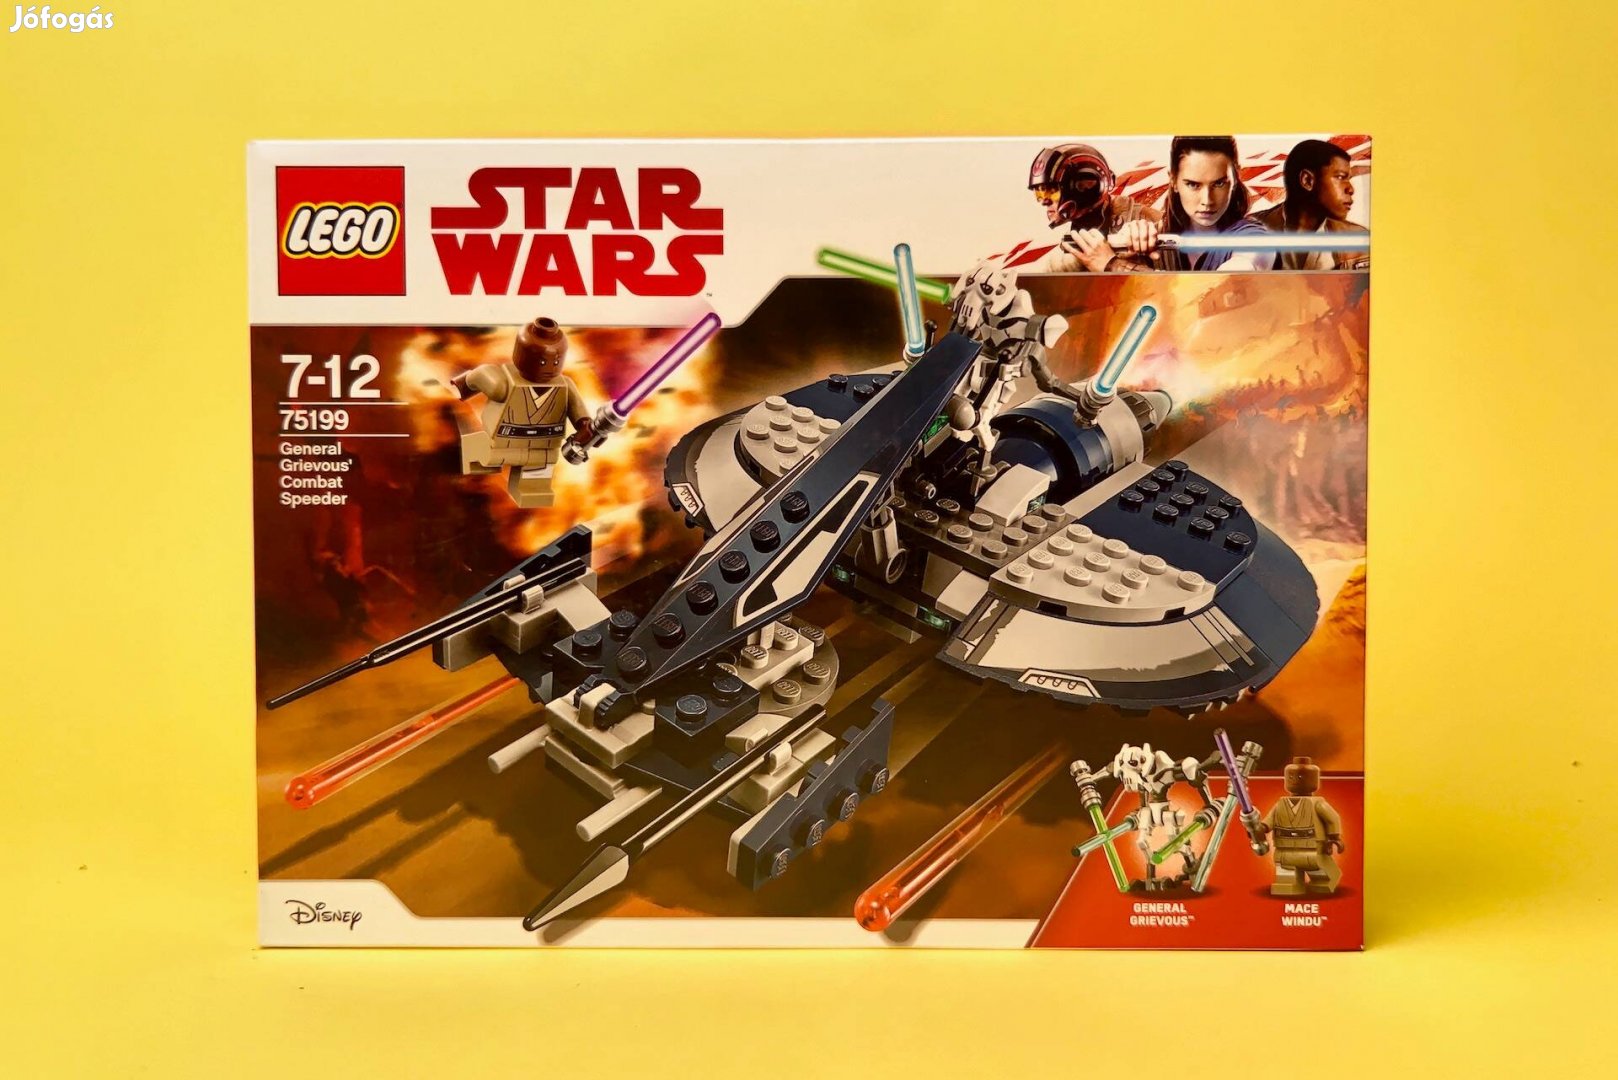 LEGO Star Wars 75199 General Grievous' Combat Speeder, Uj, Bontatlan